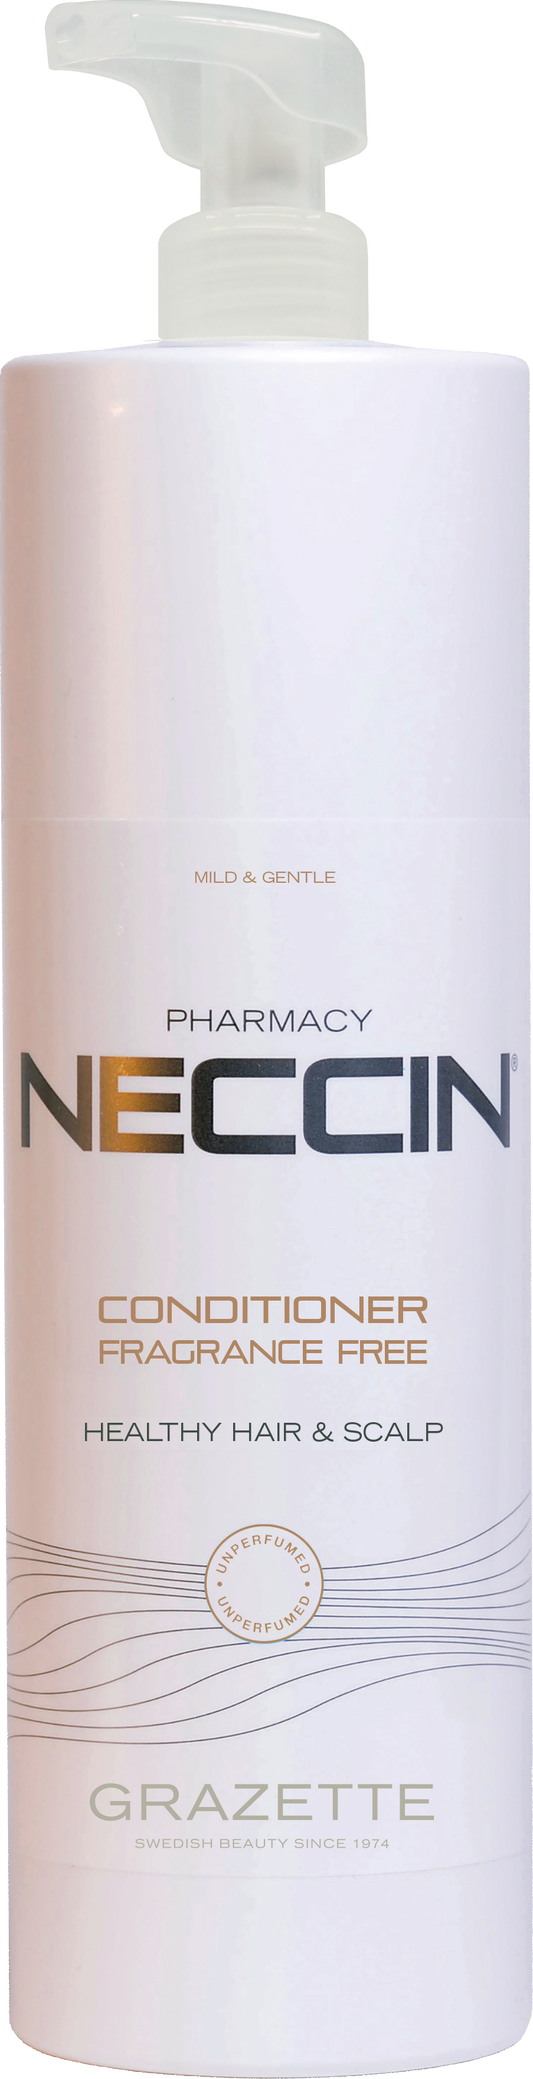 Neccin Conditioner Fragrance Free 1000ml